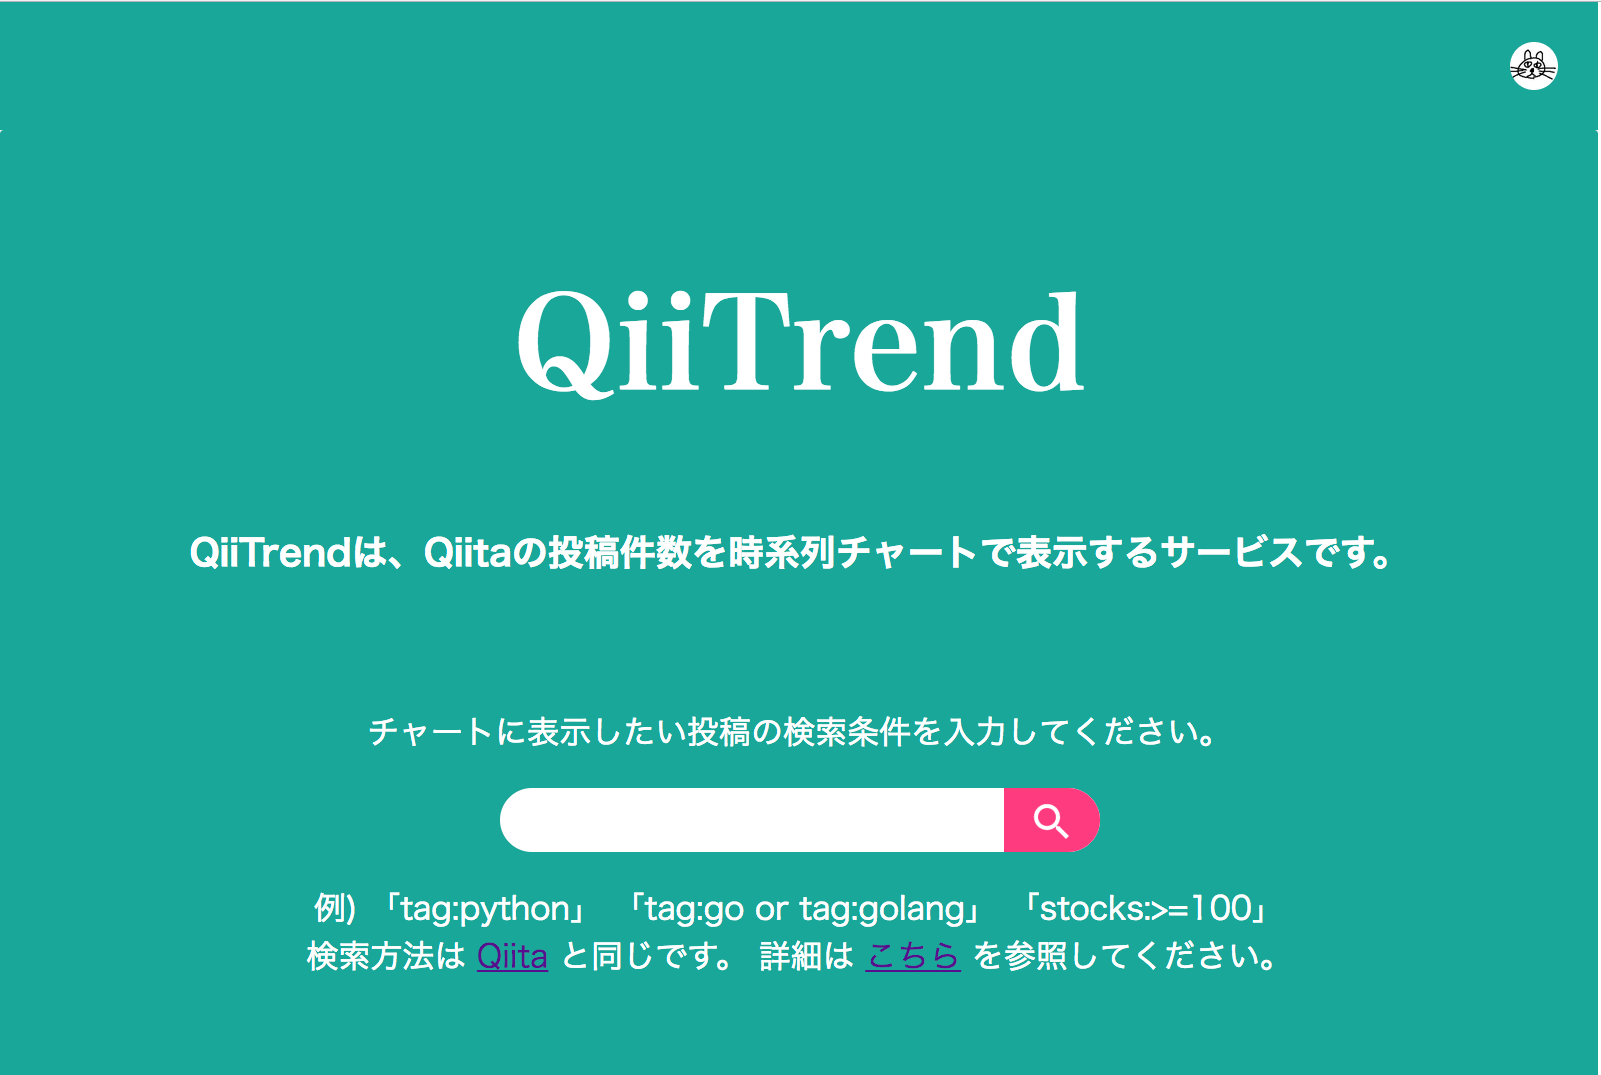 QiiTrend_トップ画面_2017_02_27.png